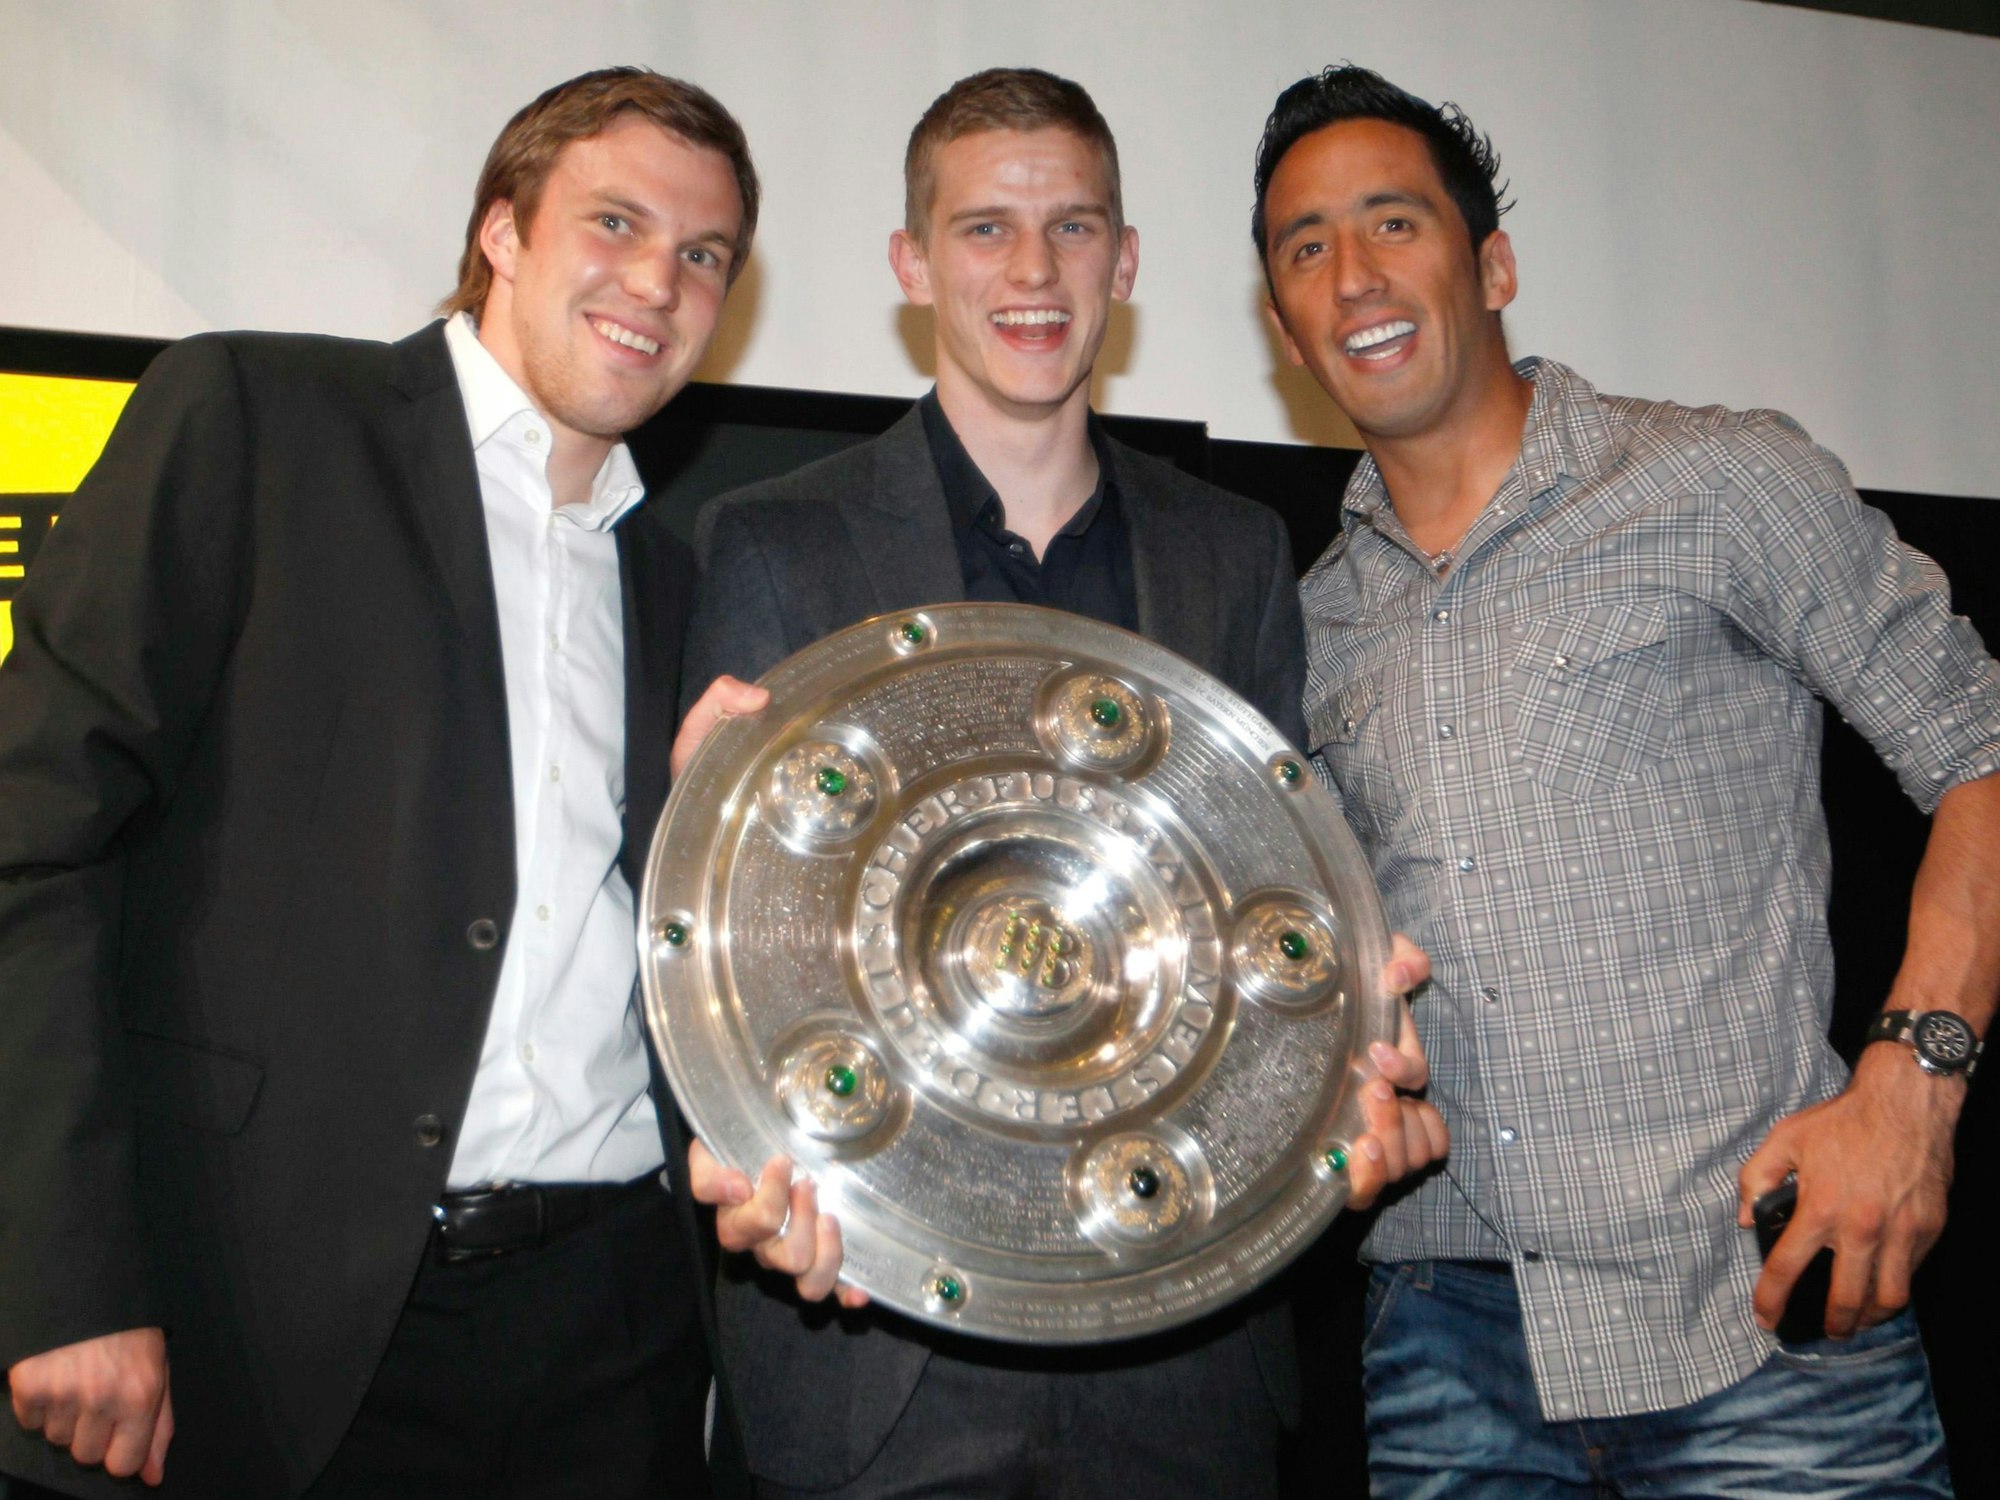 Kevin Großkreutz, Sven Bender und Lucas Barrios posieren mit der Schale, die Bender in den Händen hält. Alle drei Spieler lachen.